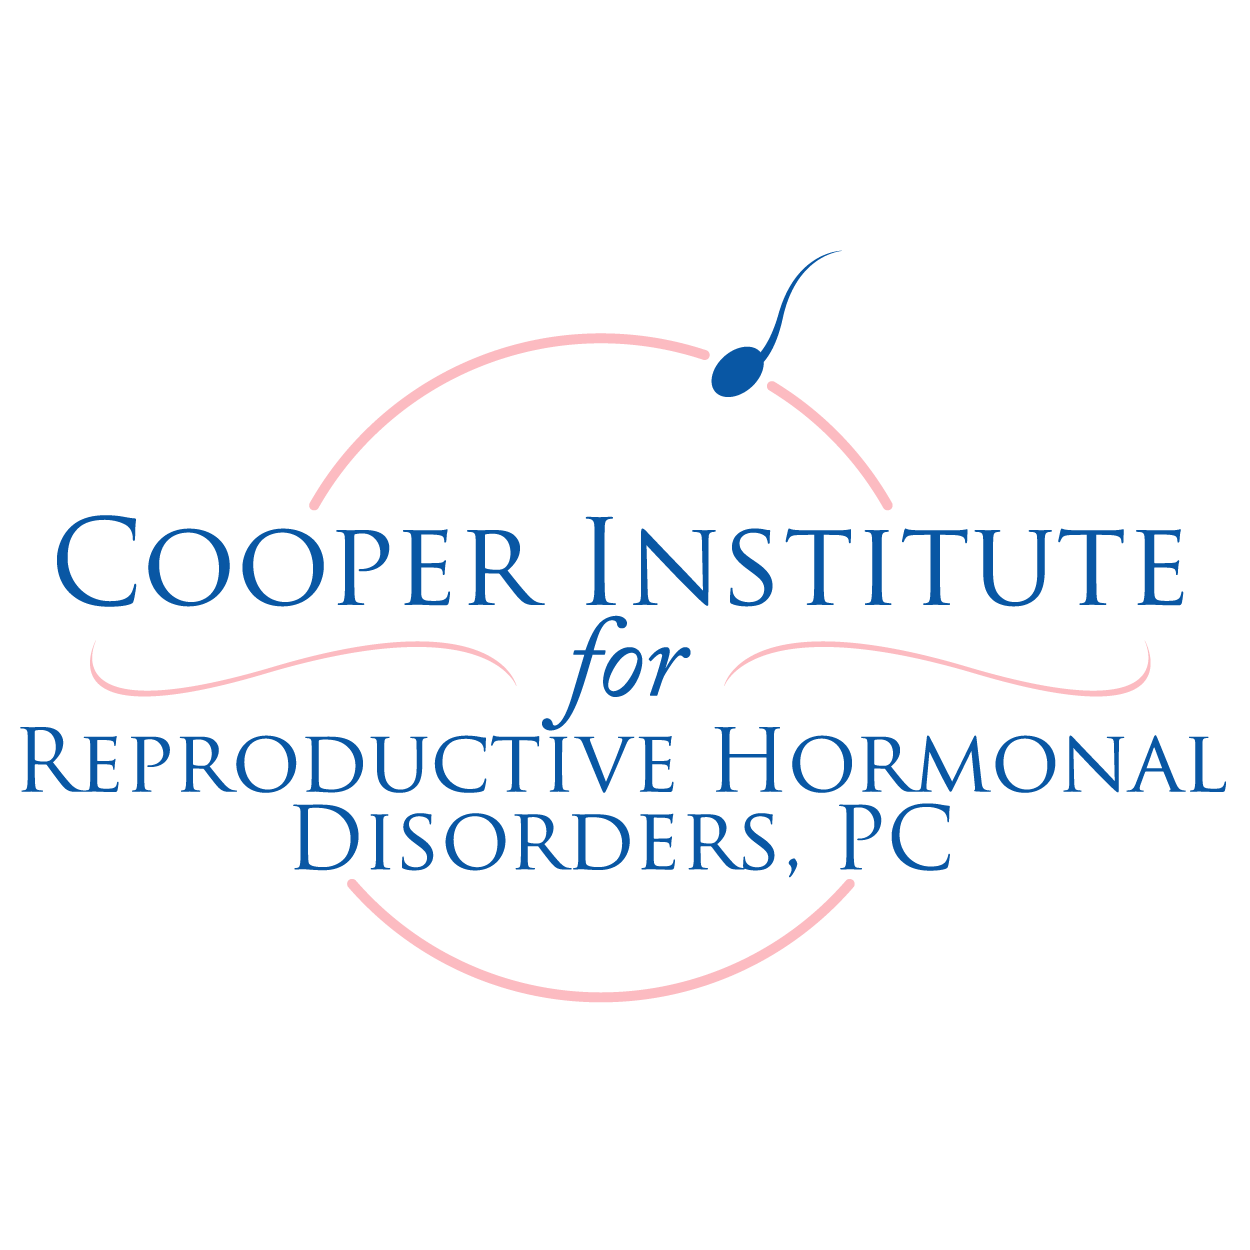 The Cooper Institute Logo